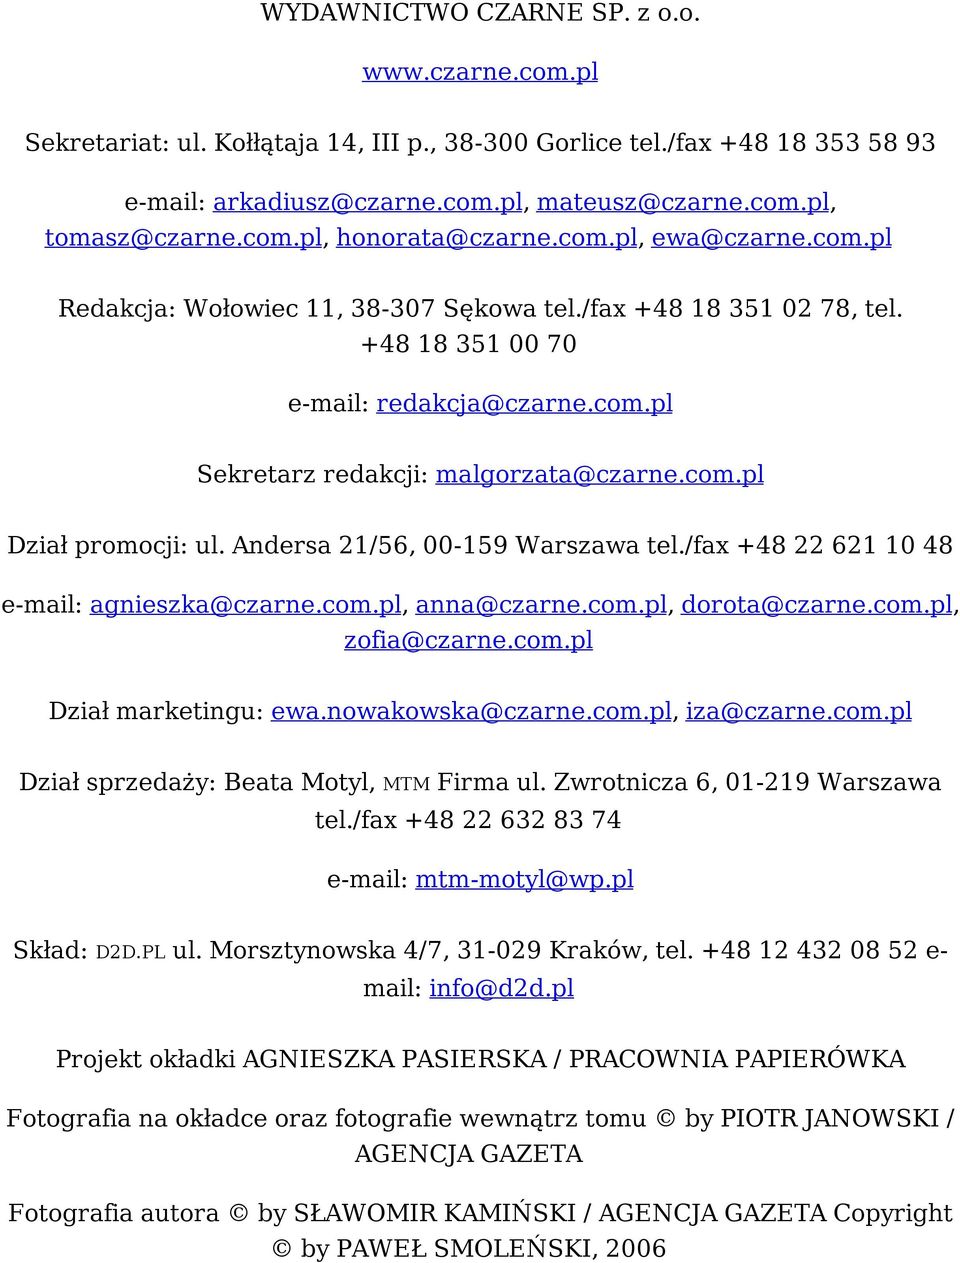 com.pl Dział promocji: ul. Andersa 21/56, 00-159 Warszawa tel./fax +48 22 621 10 48 e-mail: agnieszka@czarne.com.pl, anna@czarne.com.pl, dorota@czarne.com.pl, zofia@czarne.com.pl Dział marketingu: ewa.